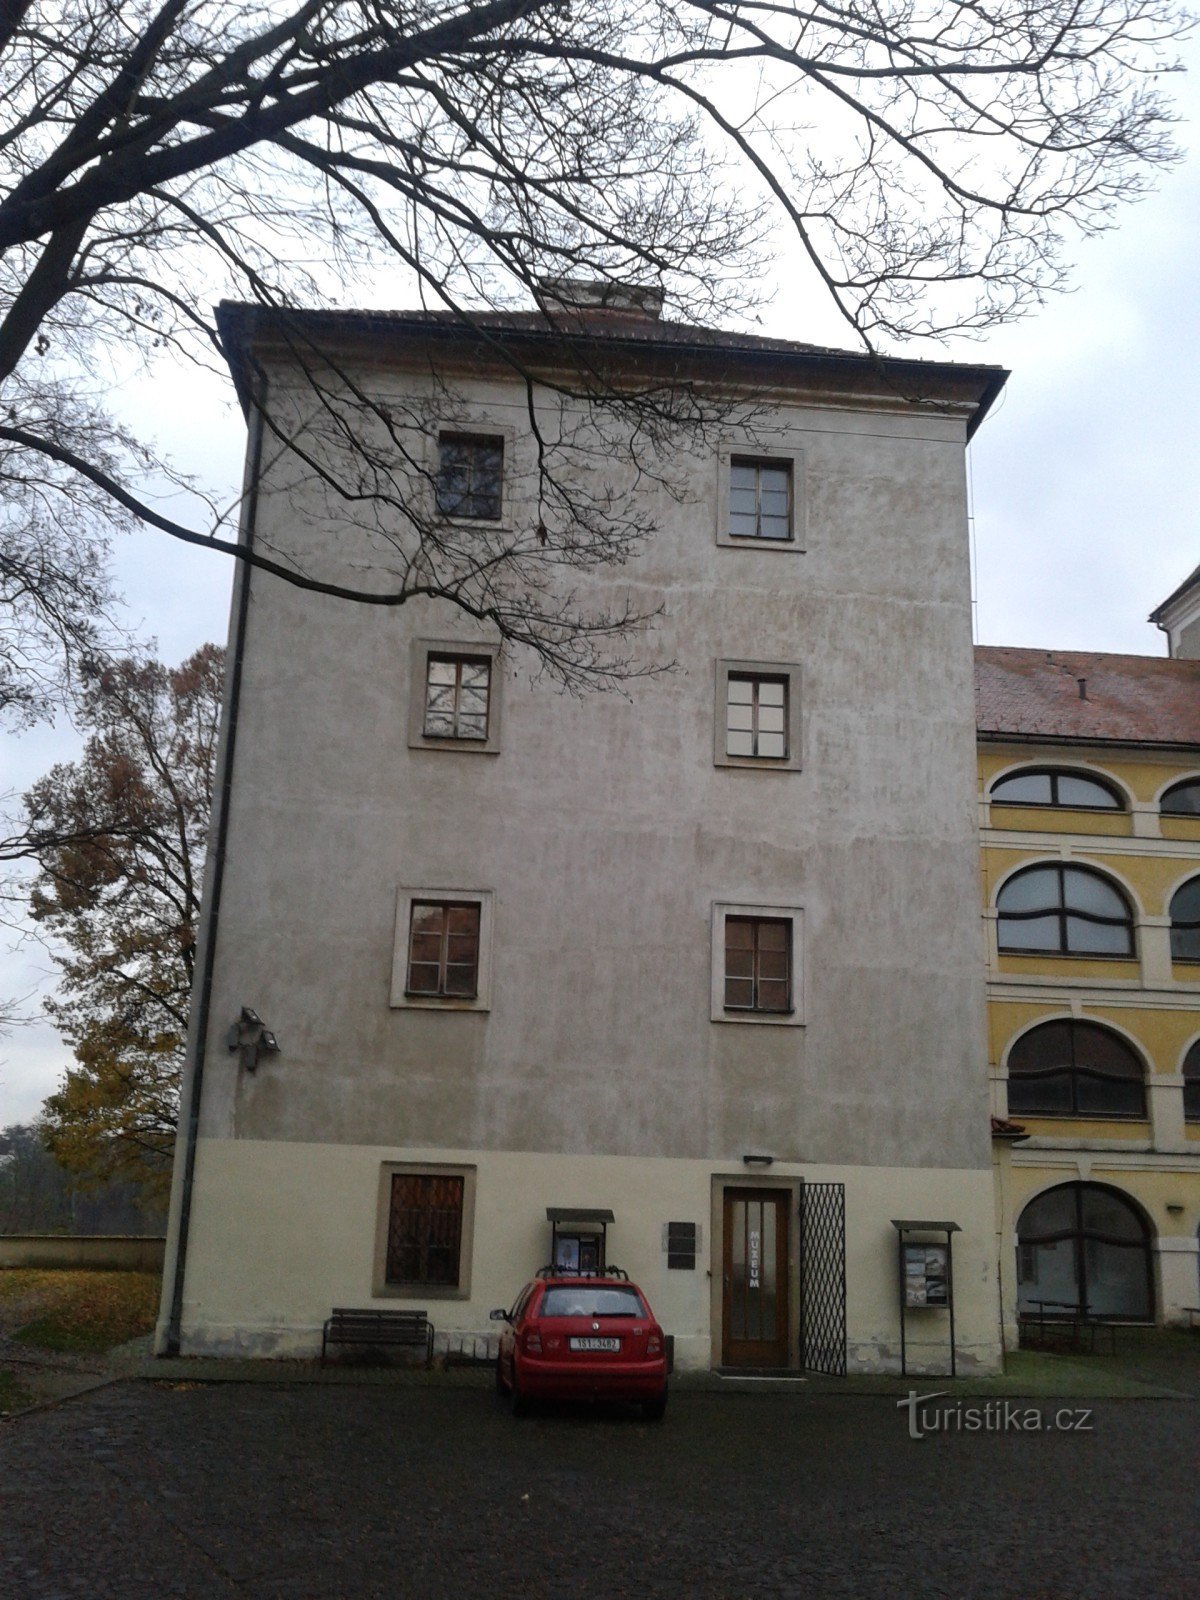 姆拉达博莱斯拉夫城堡